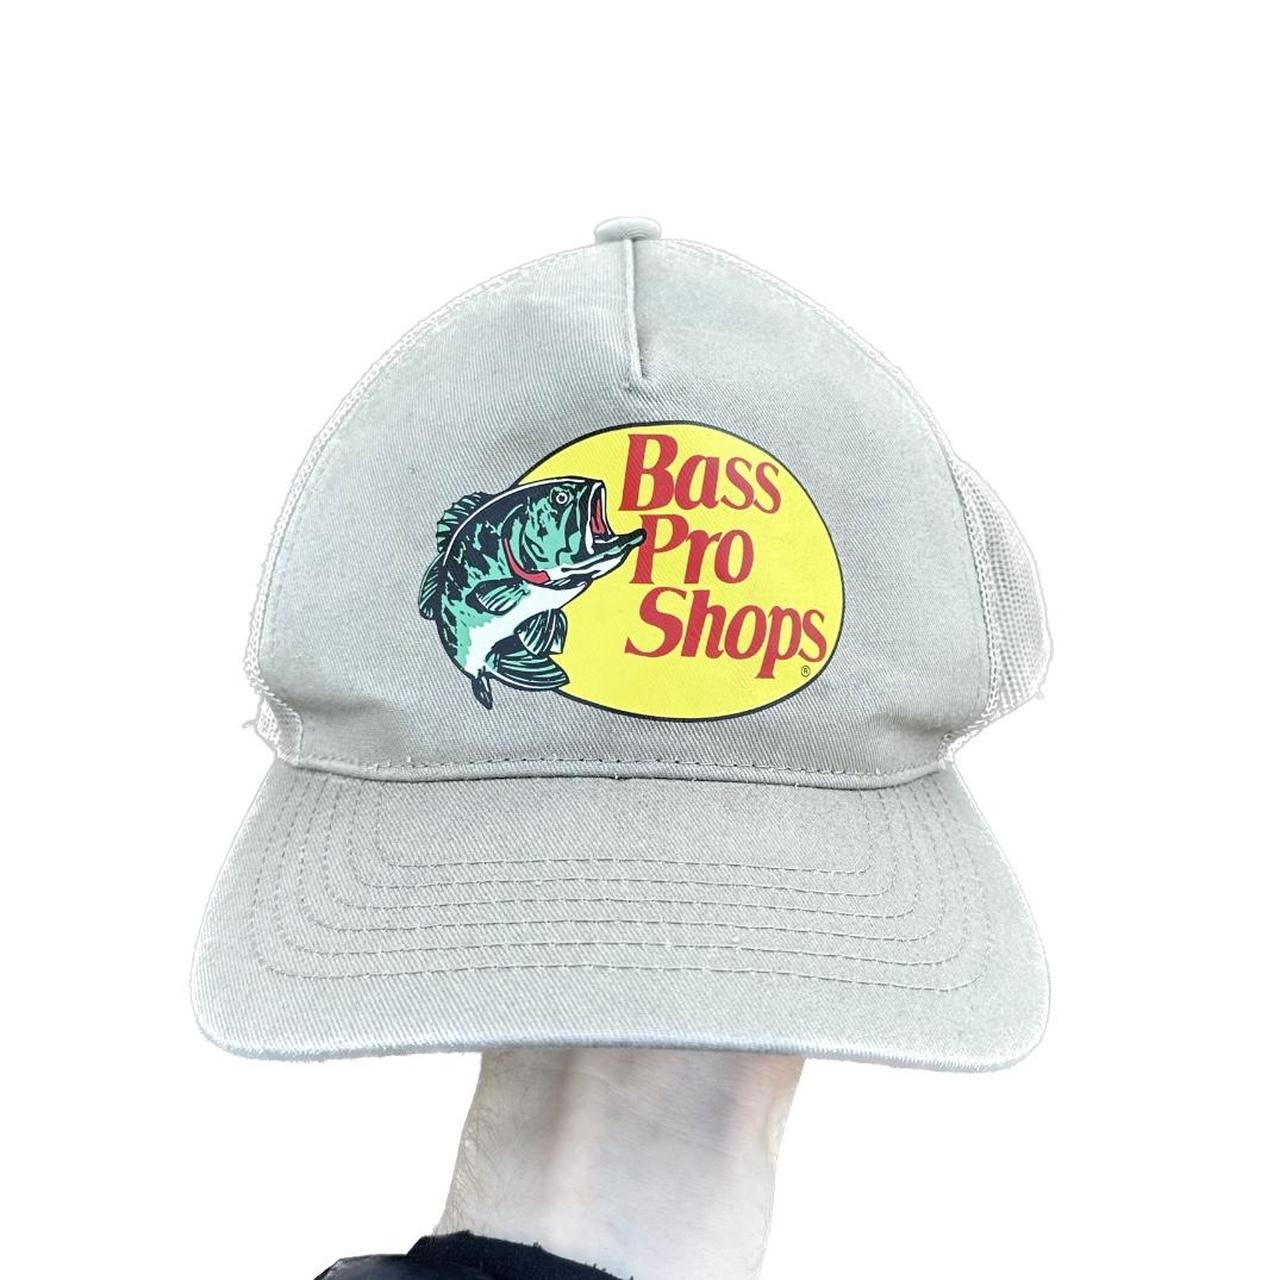 Bass Pro Shops Men's Hat - Tan